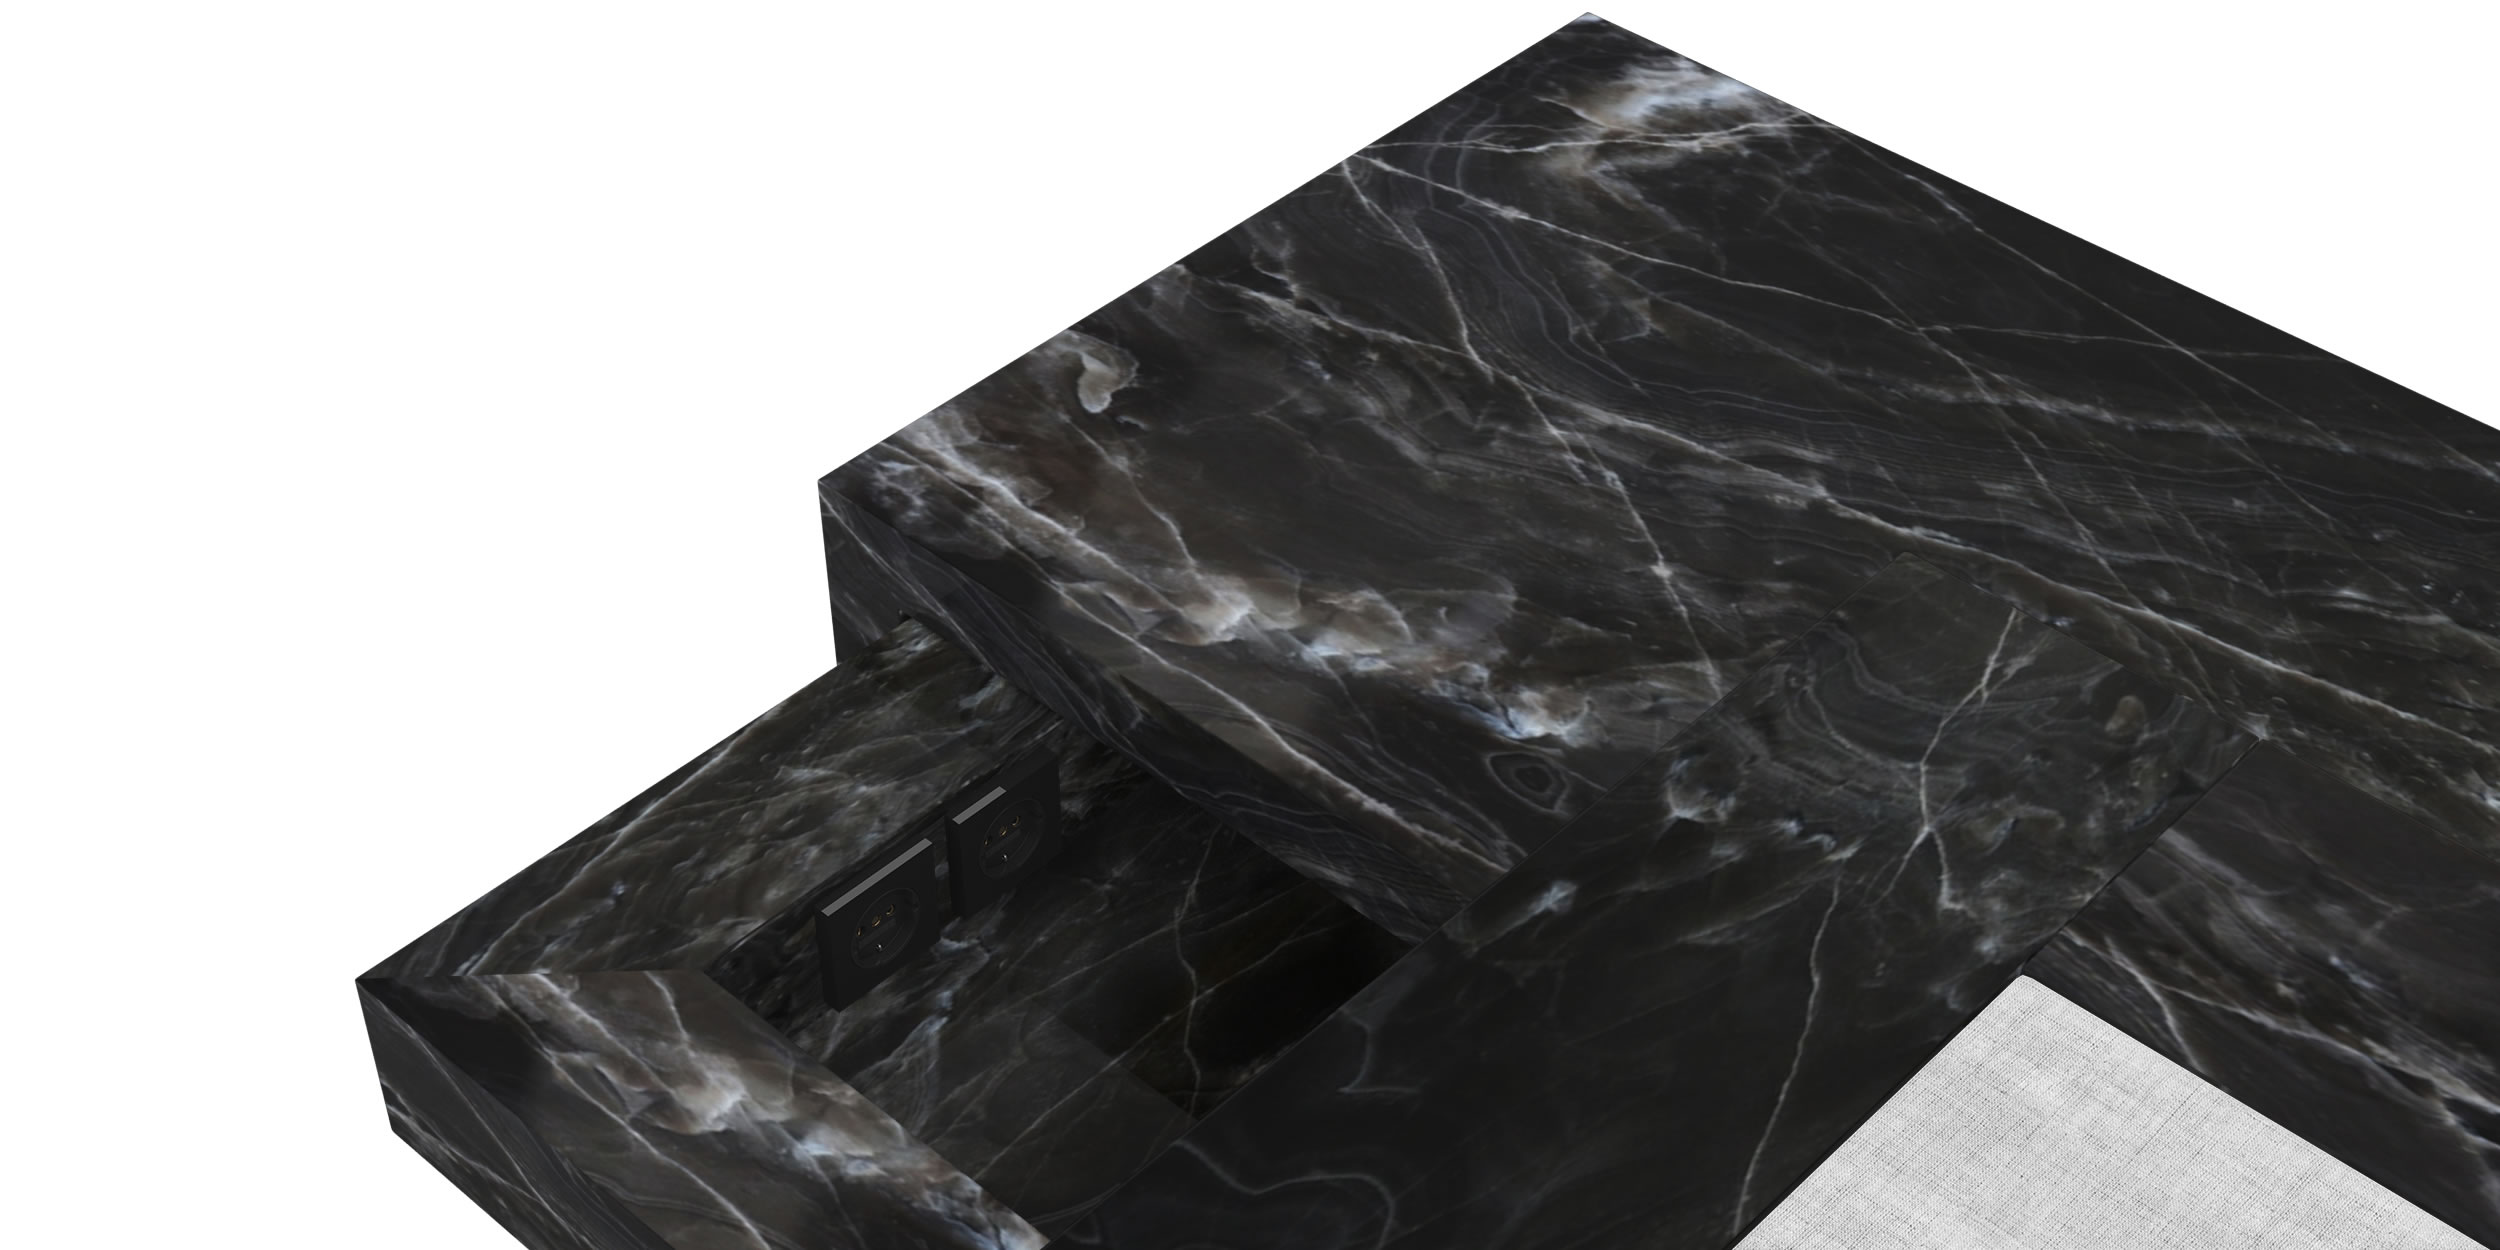 Design Bed Nightstand Drawer Marble Black Design Refined Handcrafted Luxury InteriorFELIX SCHWAKE